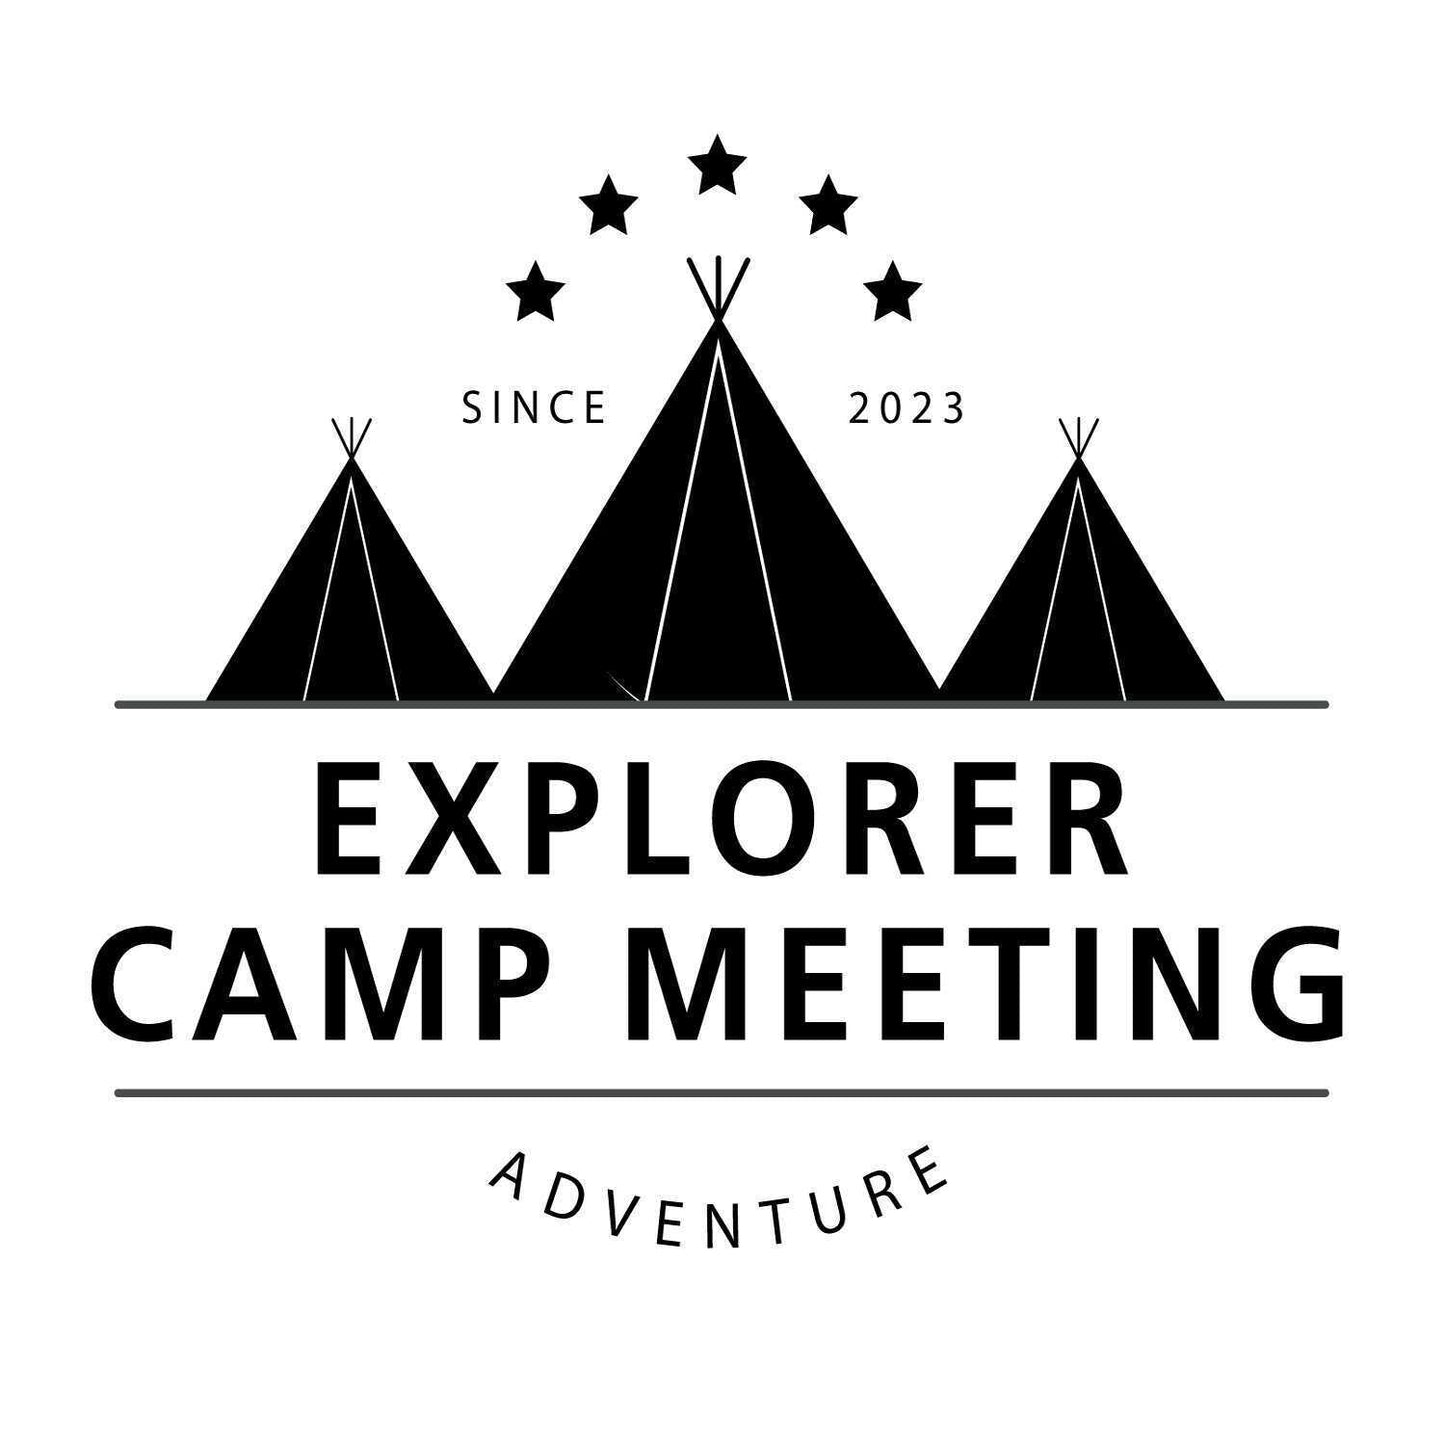 【10/28(土)-10/29(日)開催イベント】EXPLORER CAMP MEETING@エクスプローラーパーク